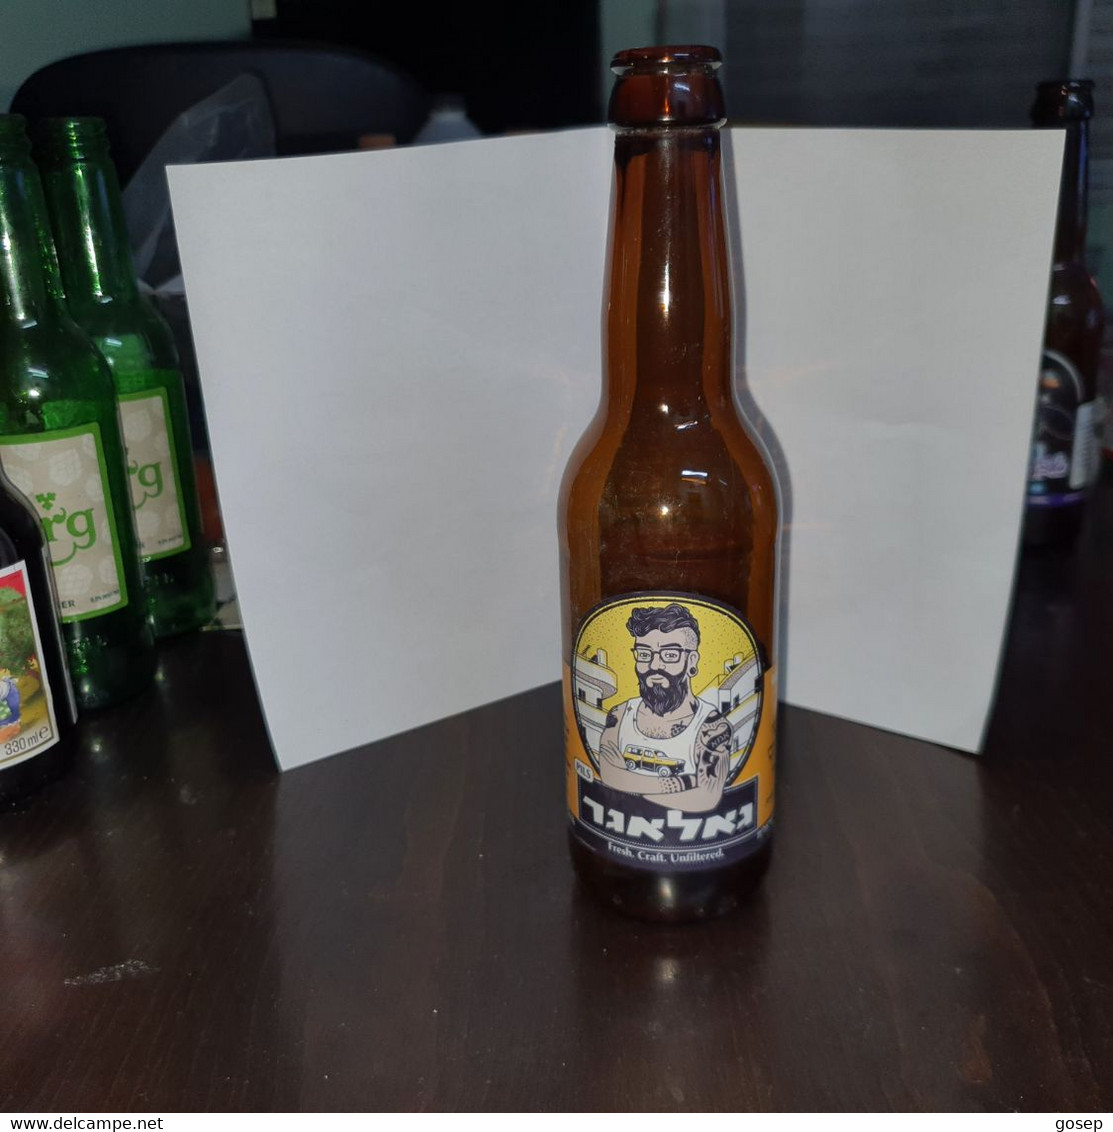 Israel-Kraft-Gallagher Beer Crapat-(330ml)-(5.1%)-bottles-used - Beer